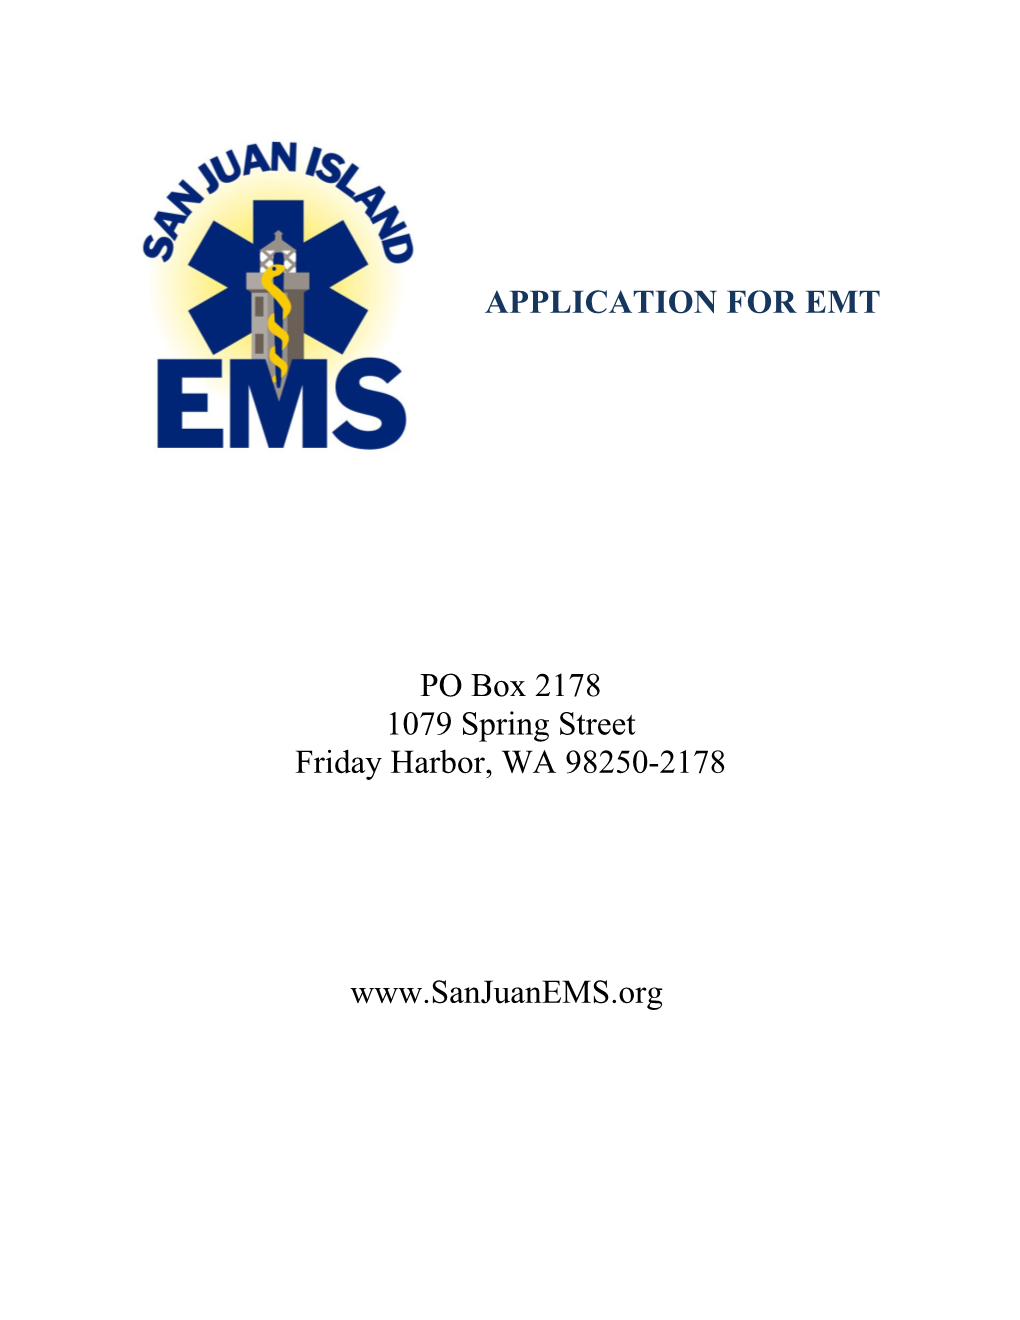 Application for Emt